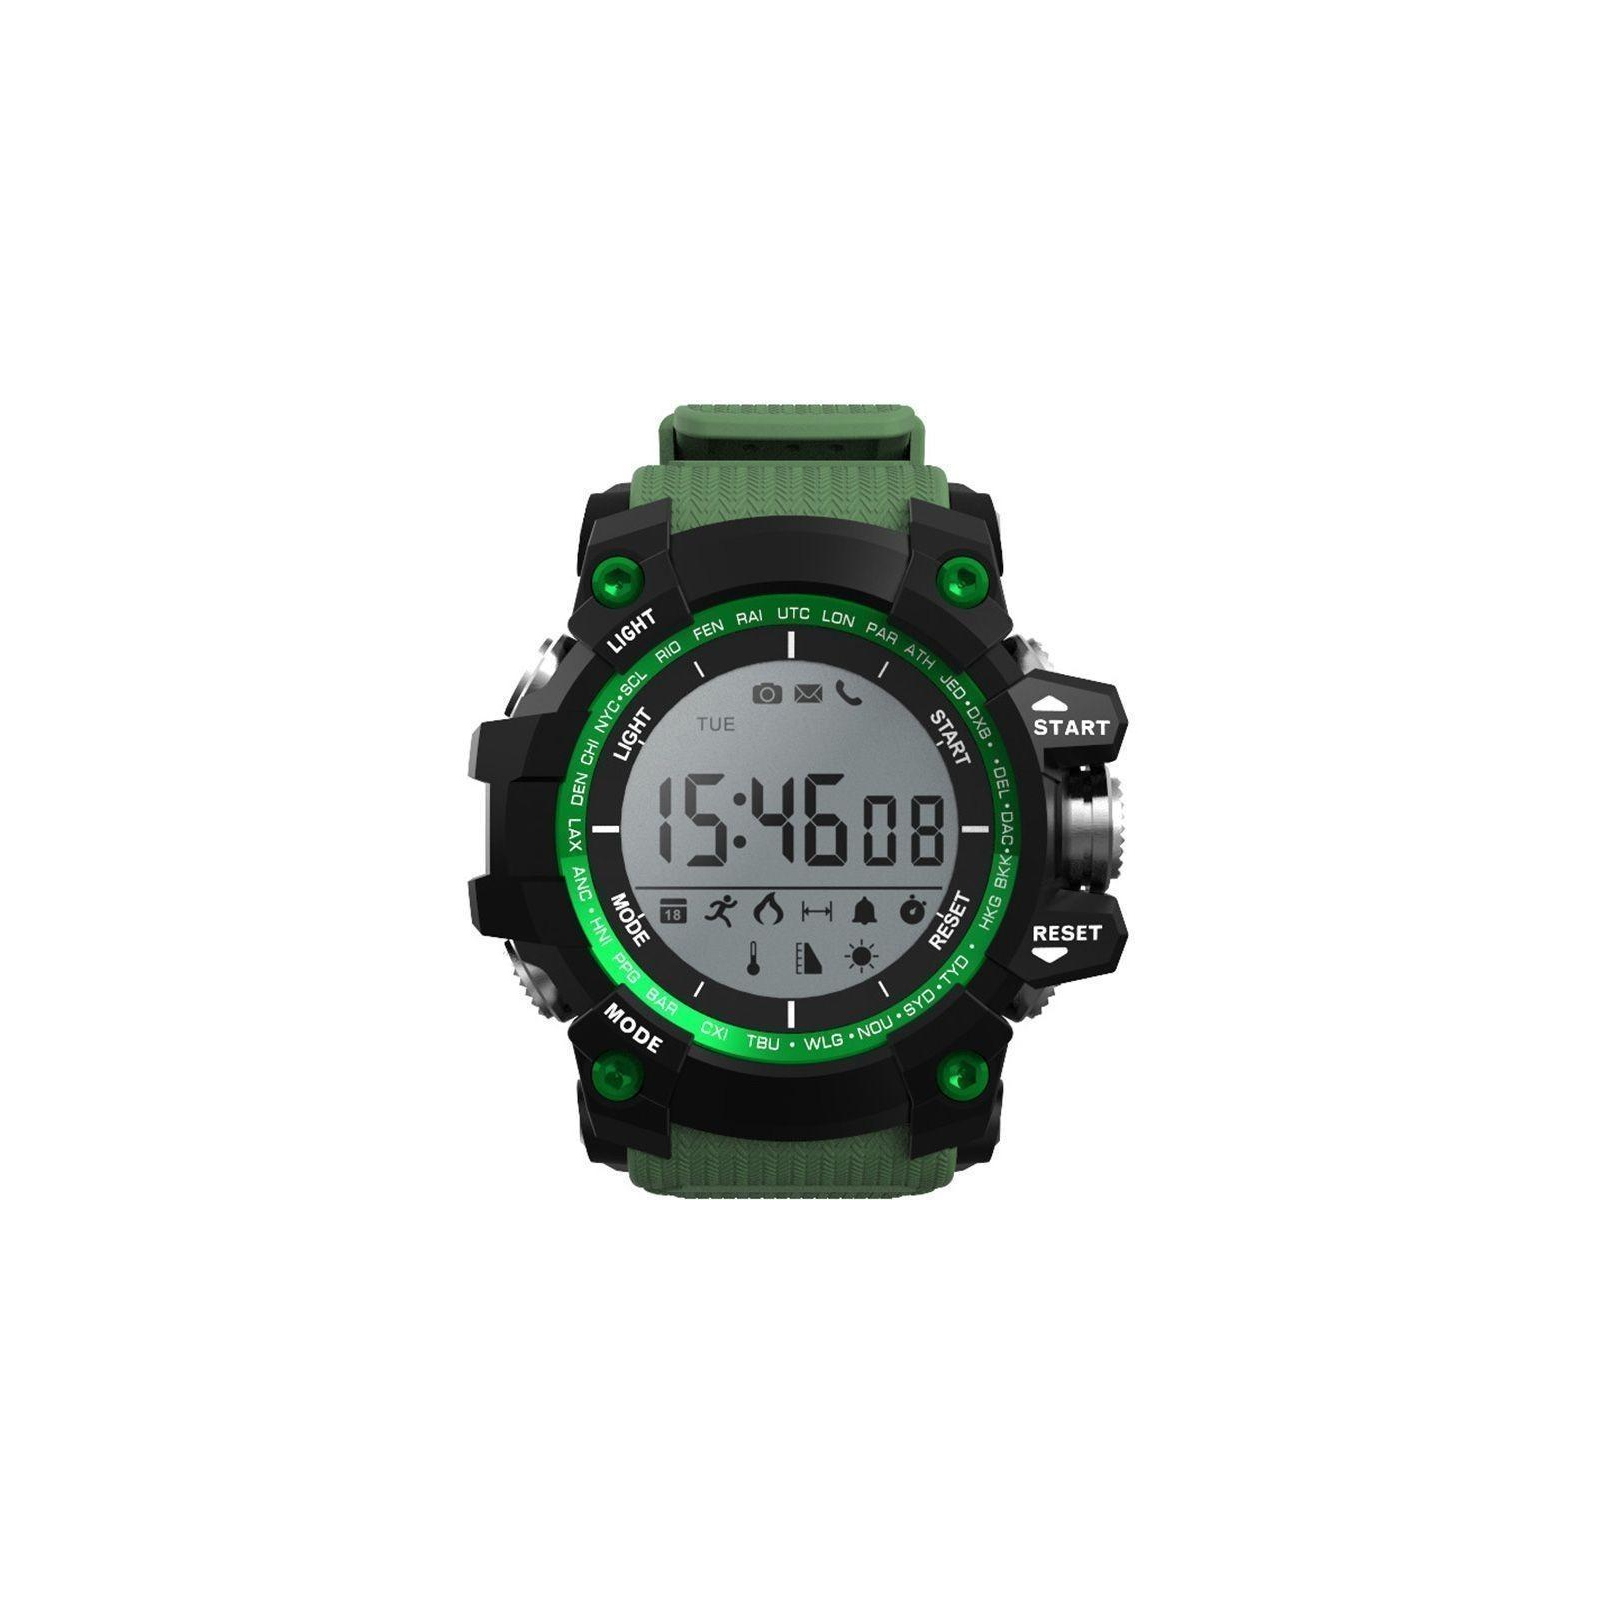 Смарт-часы UWatch XR05 Black (F_55467) изображение 2